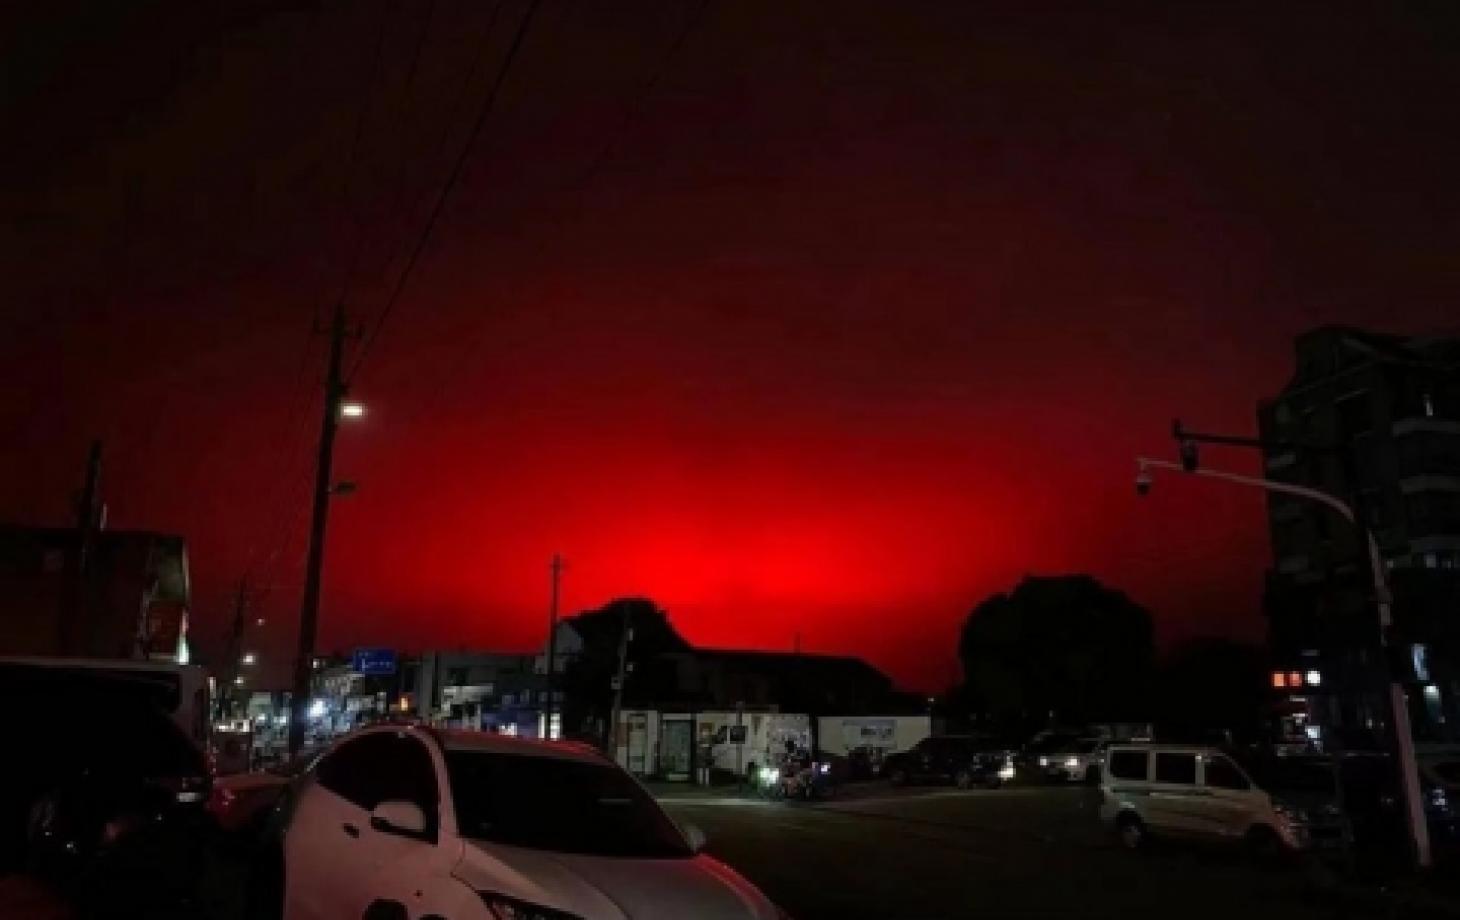 Небо над китайским городом необъяснимым образом становится кроваво-красным, признаки апокалипсиса?